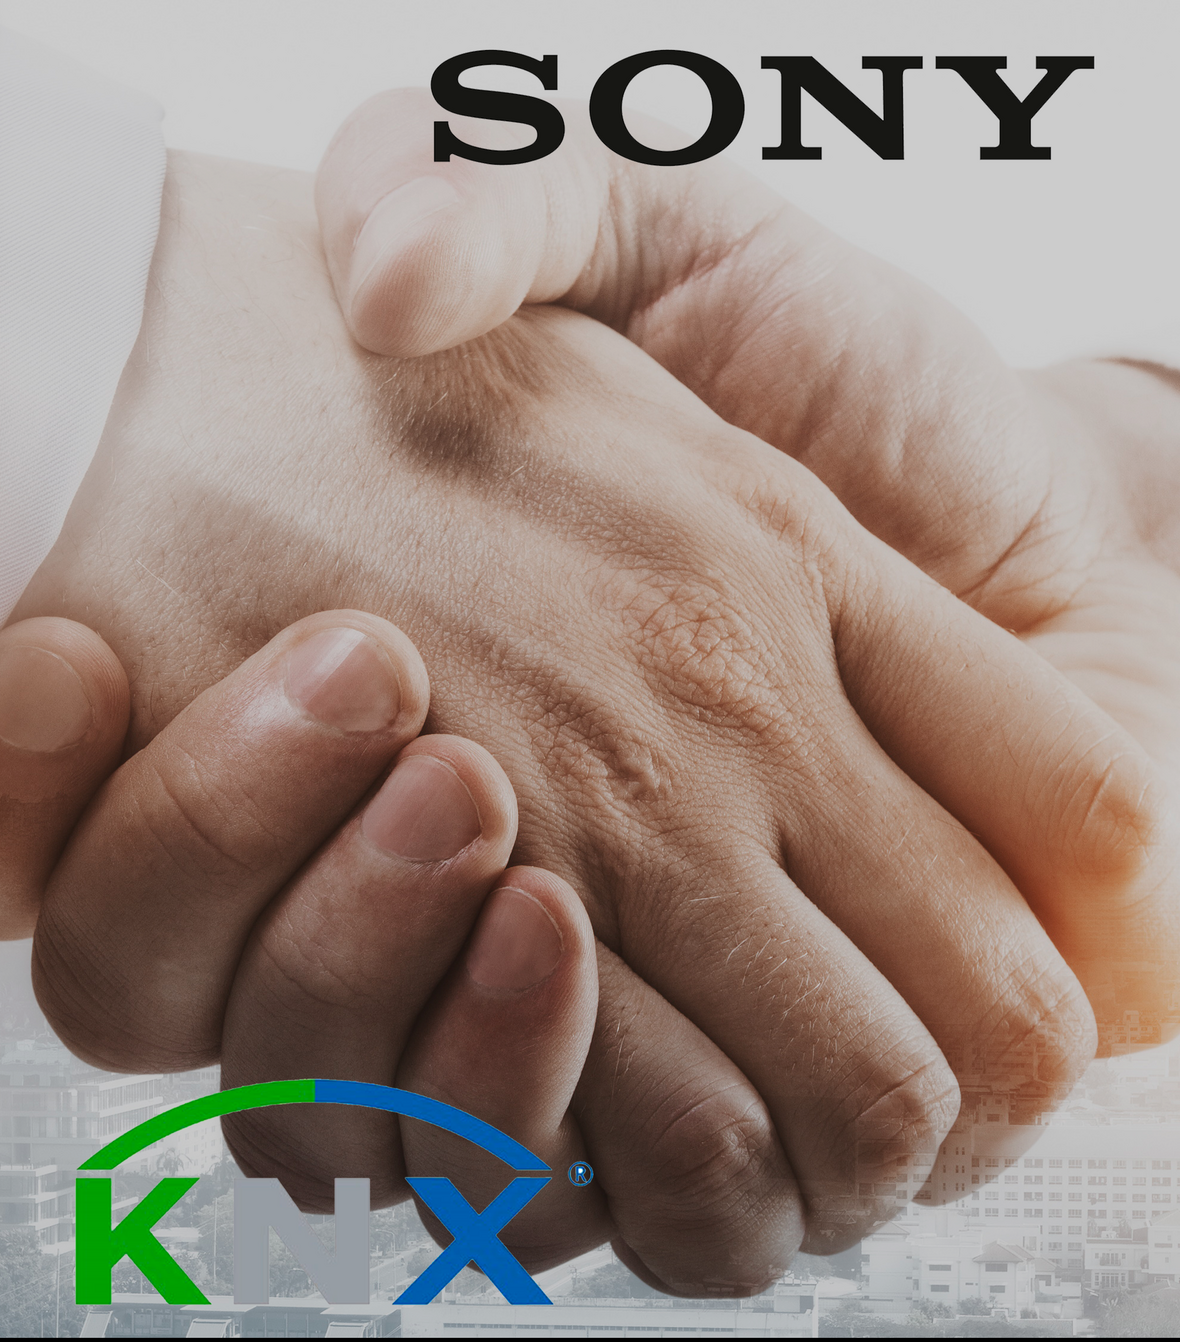 KNX begrüsst Sony als 500. Mitglied: Partnerschaft unterstreicht wachsende Beliebtheit von KNX IoT